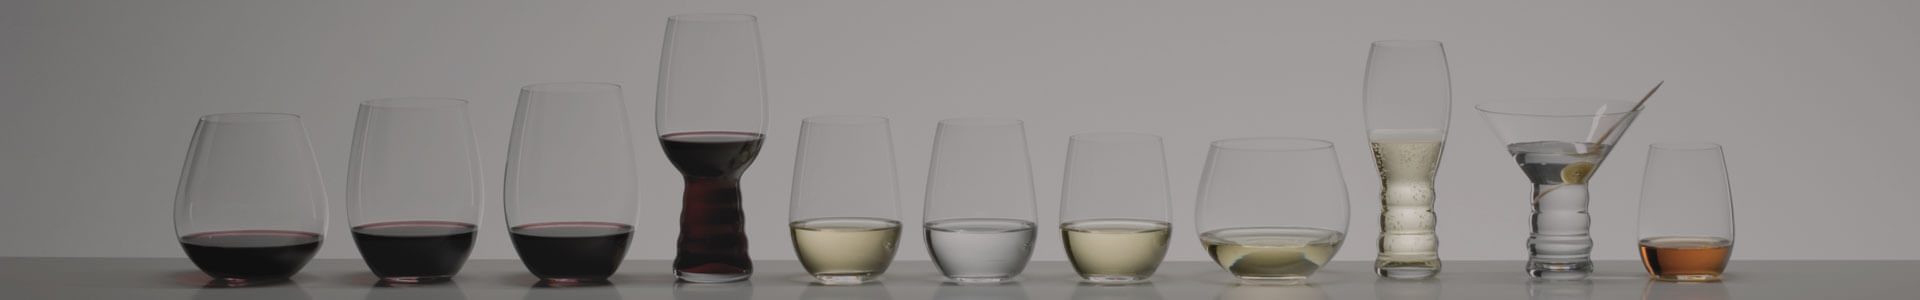 Verschiedene Gläser aus der Serie O von Riedel stehen nebeneinander.